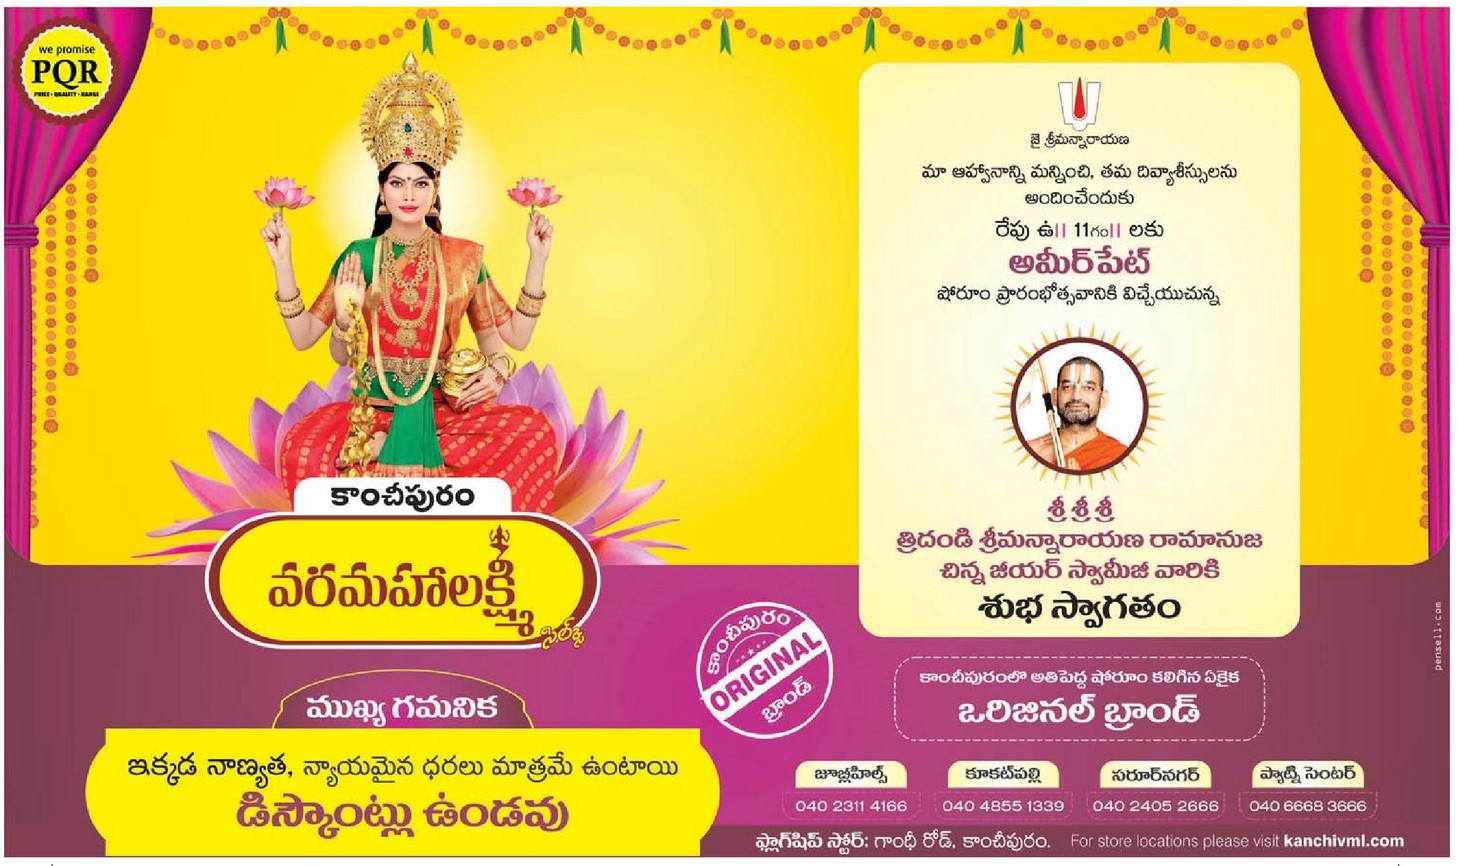 Kancheepuram Varamahalakshmi Sarees Original Brand Ad - Advert Gallery